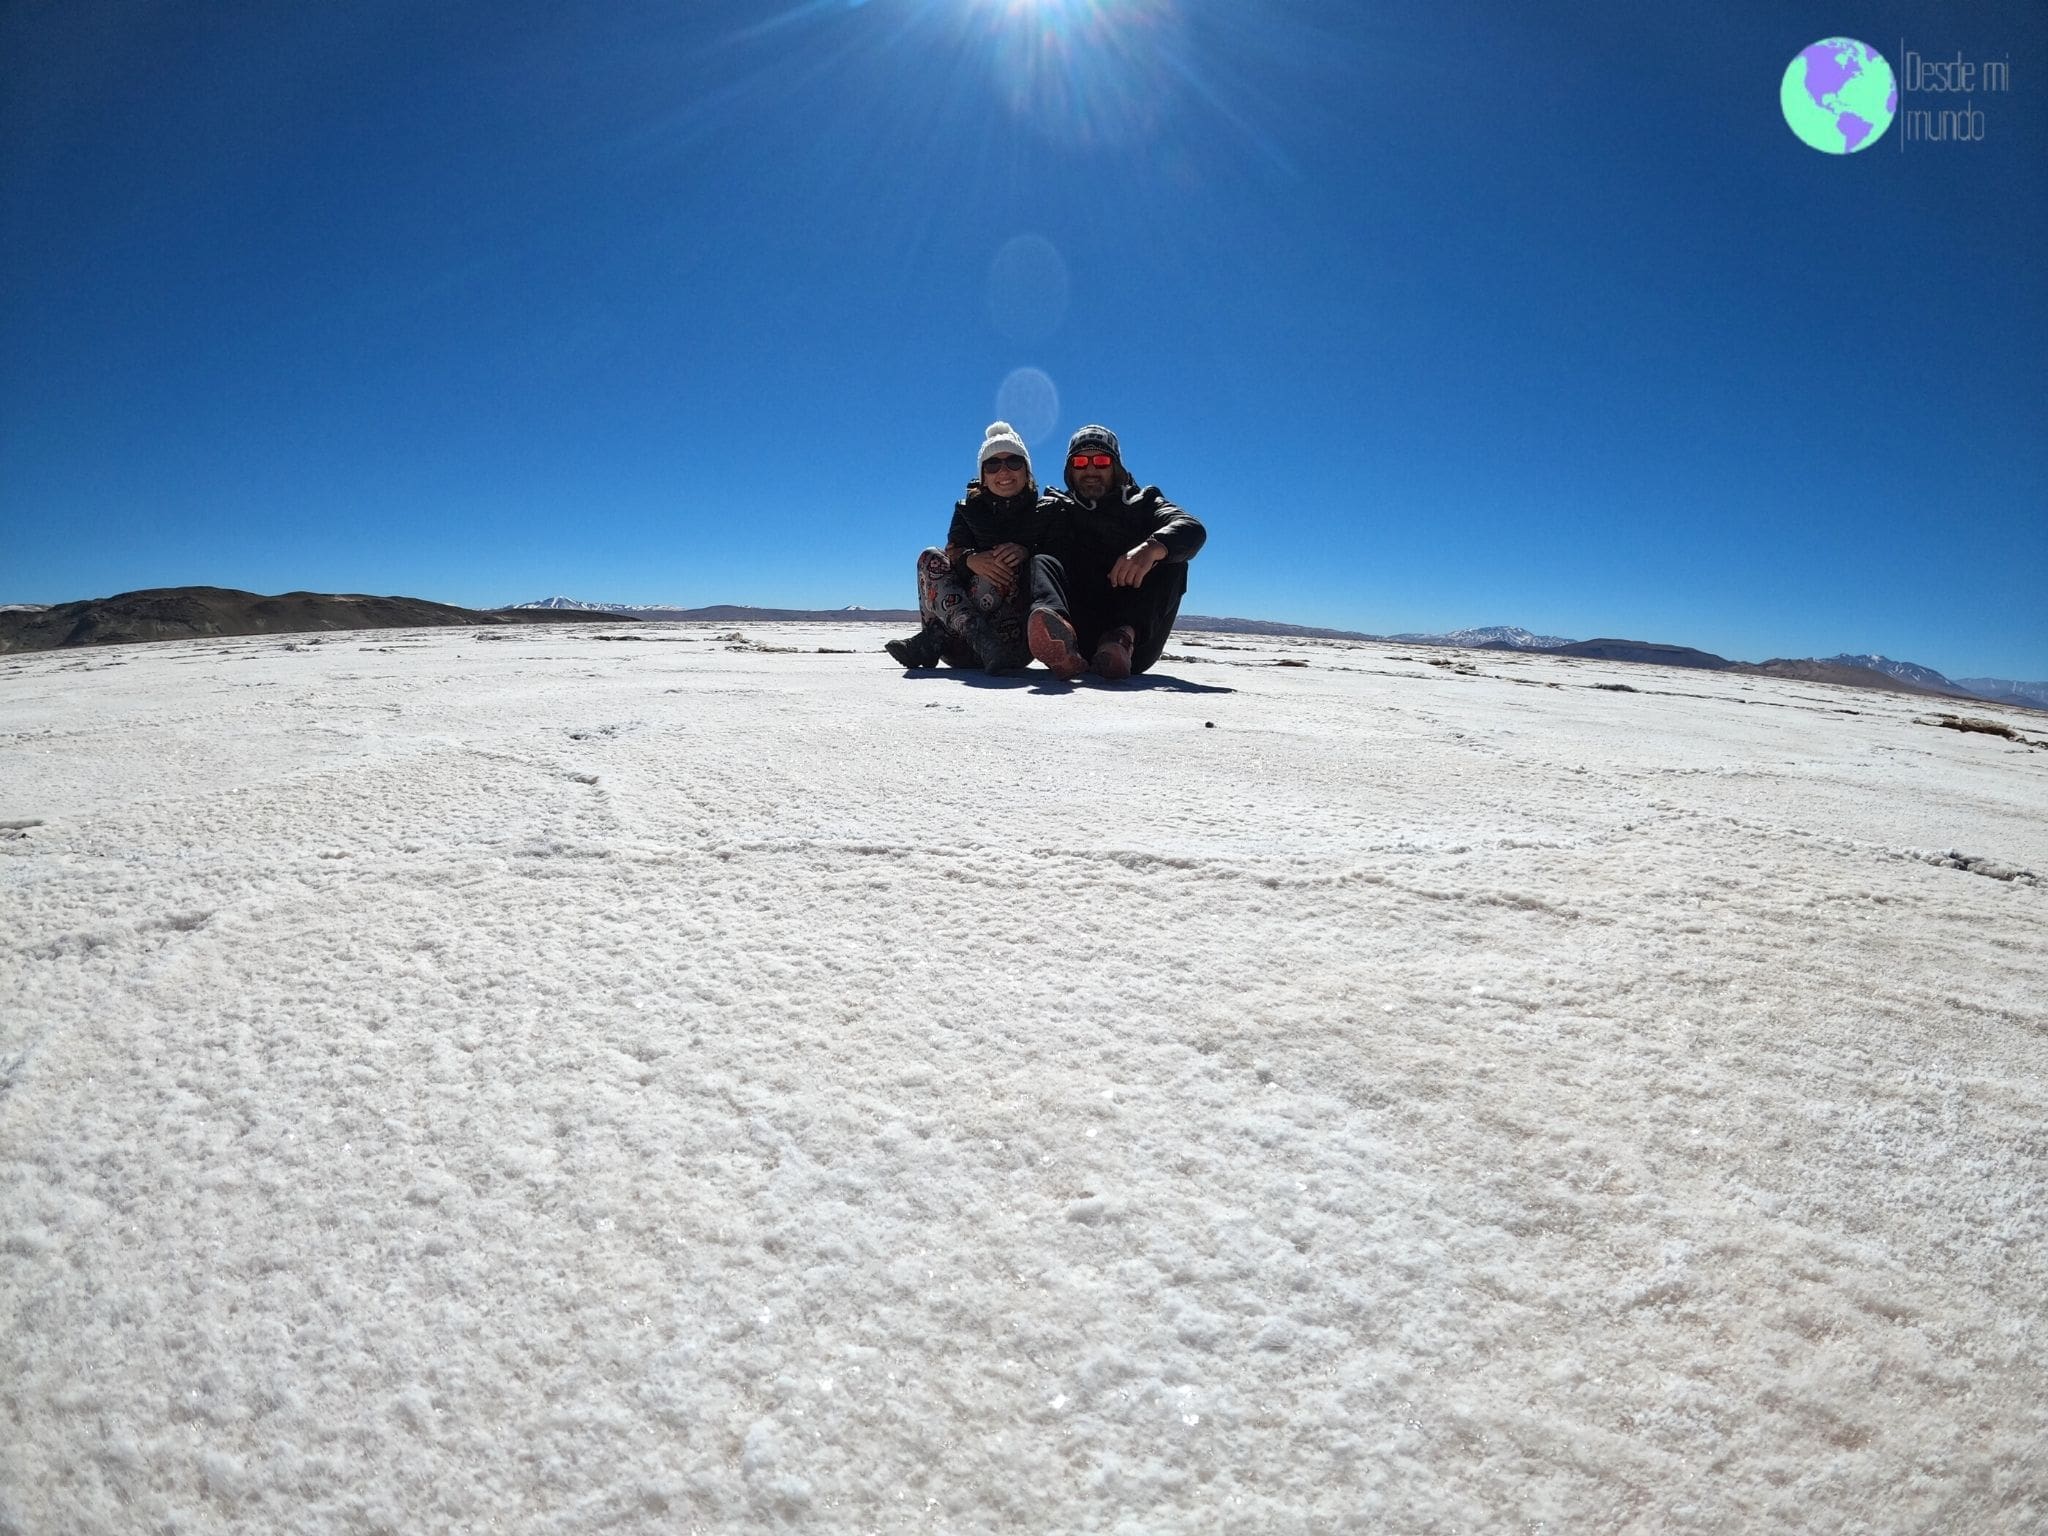 Viaje al Noroeste Argentino - Salar del hombre muerto - Desde mi mundo Blog de viajes